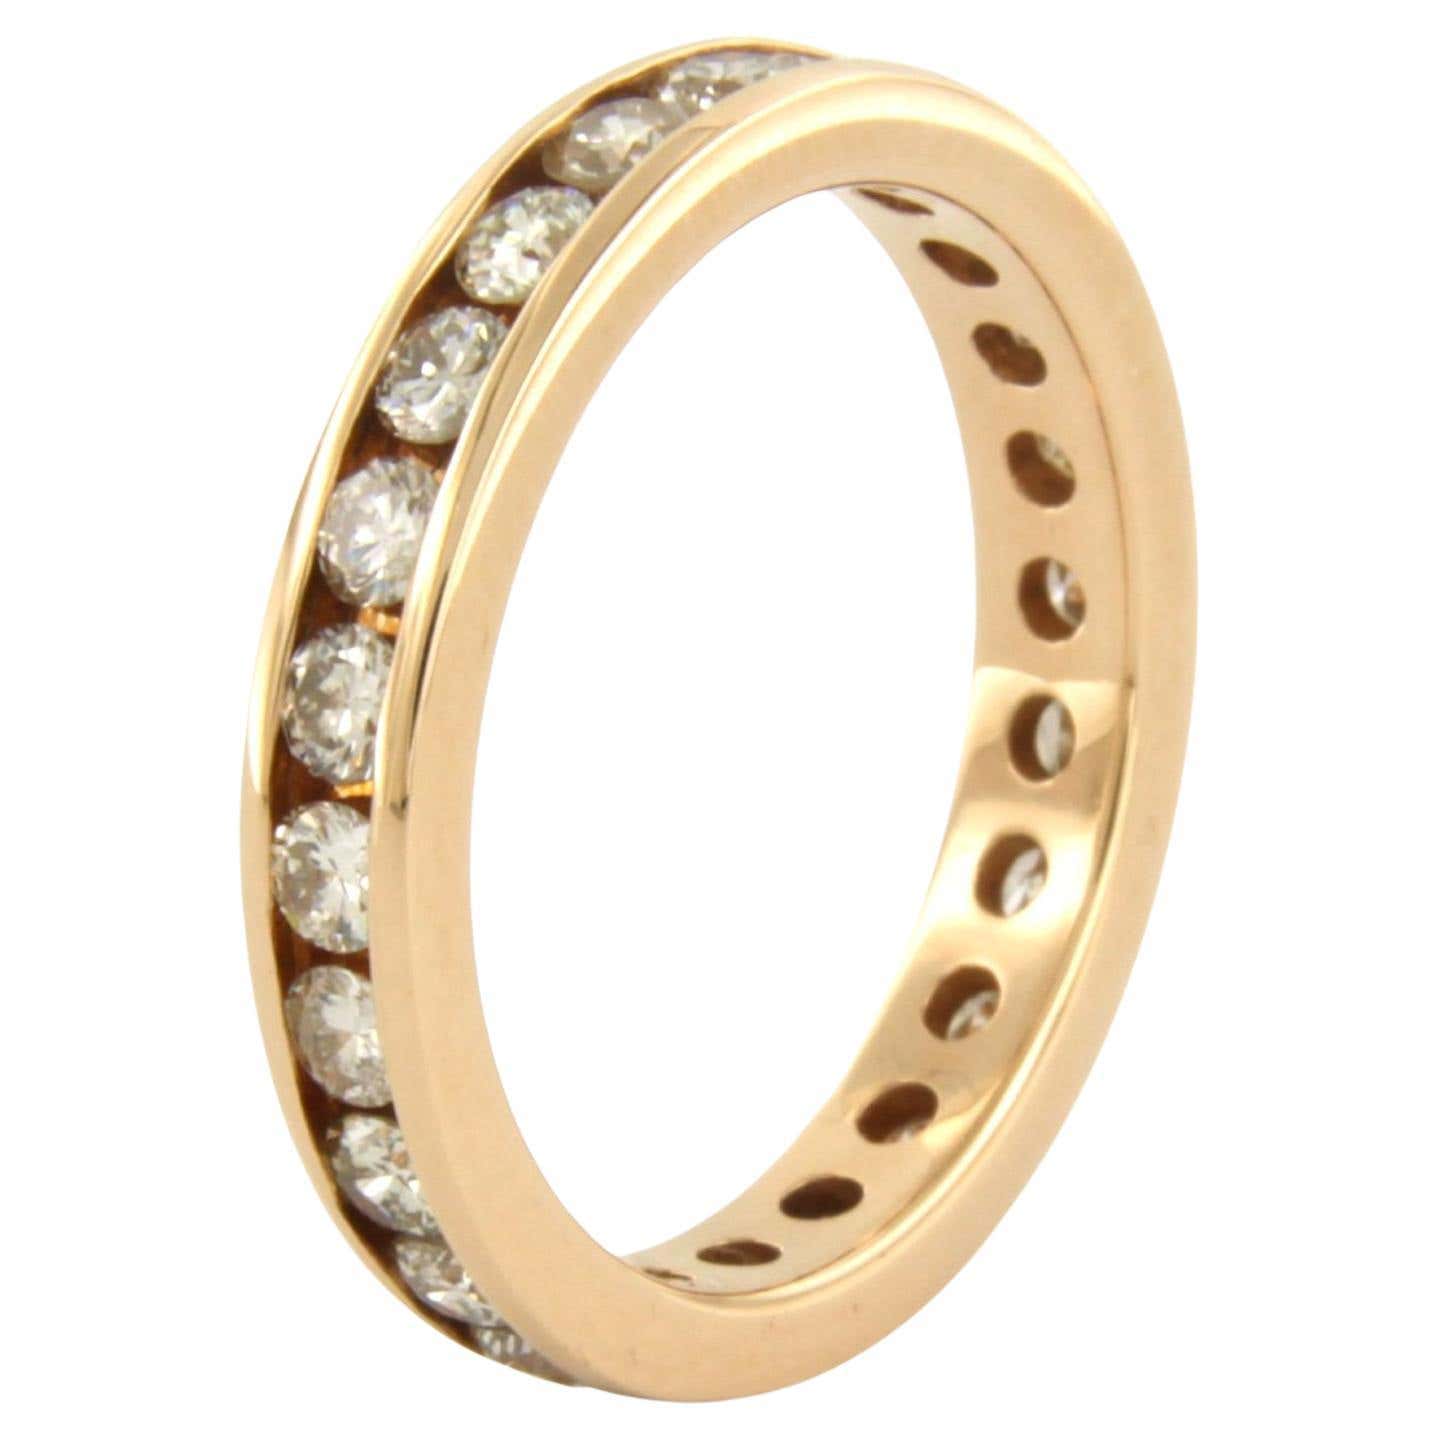 Anello per l'eternità con diamanti taglio brillante fino a 1,26 carati in oro rosa 18 ct.